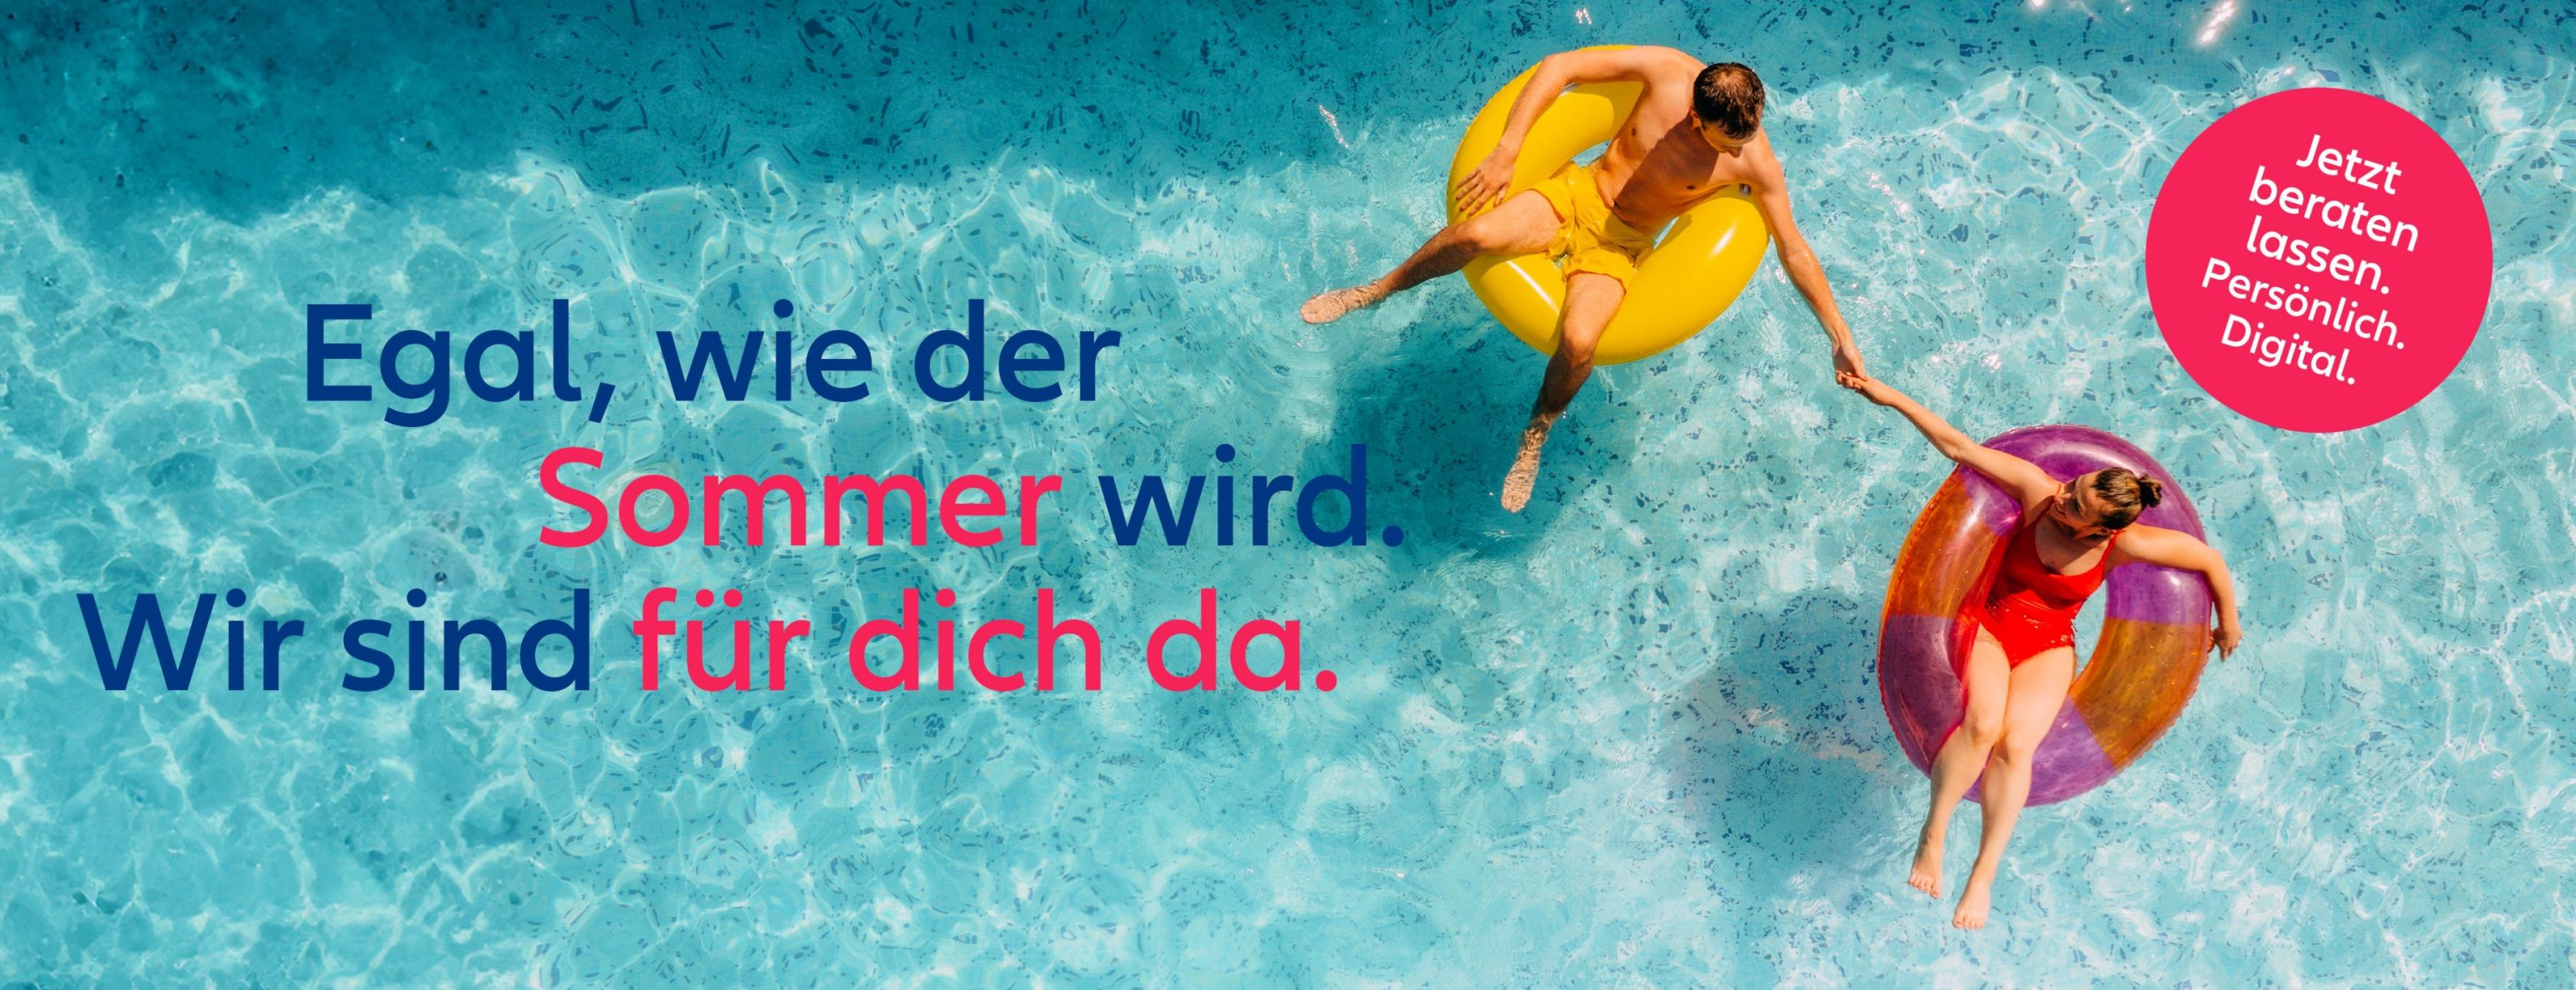 Allianz Versicherung Daniel Günthner Fluorn-Winzeln - Reisekrankenversicherung Reiserücktritt Urlaub